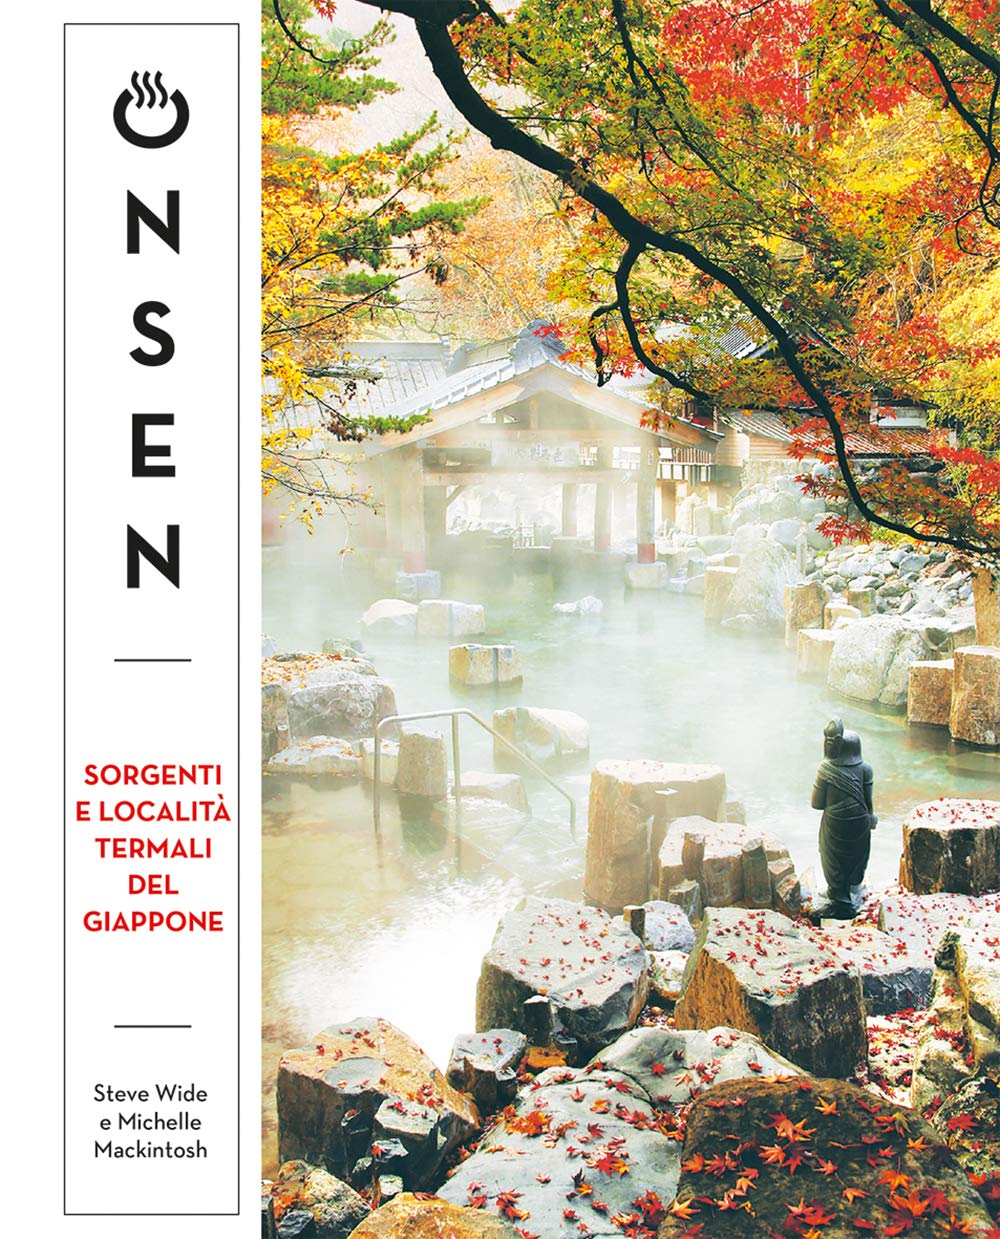 ONSEN - Sorgenti e località termali del Giappone